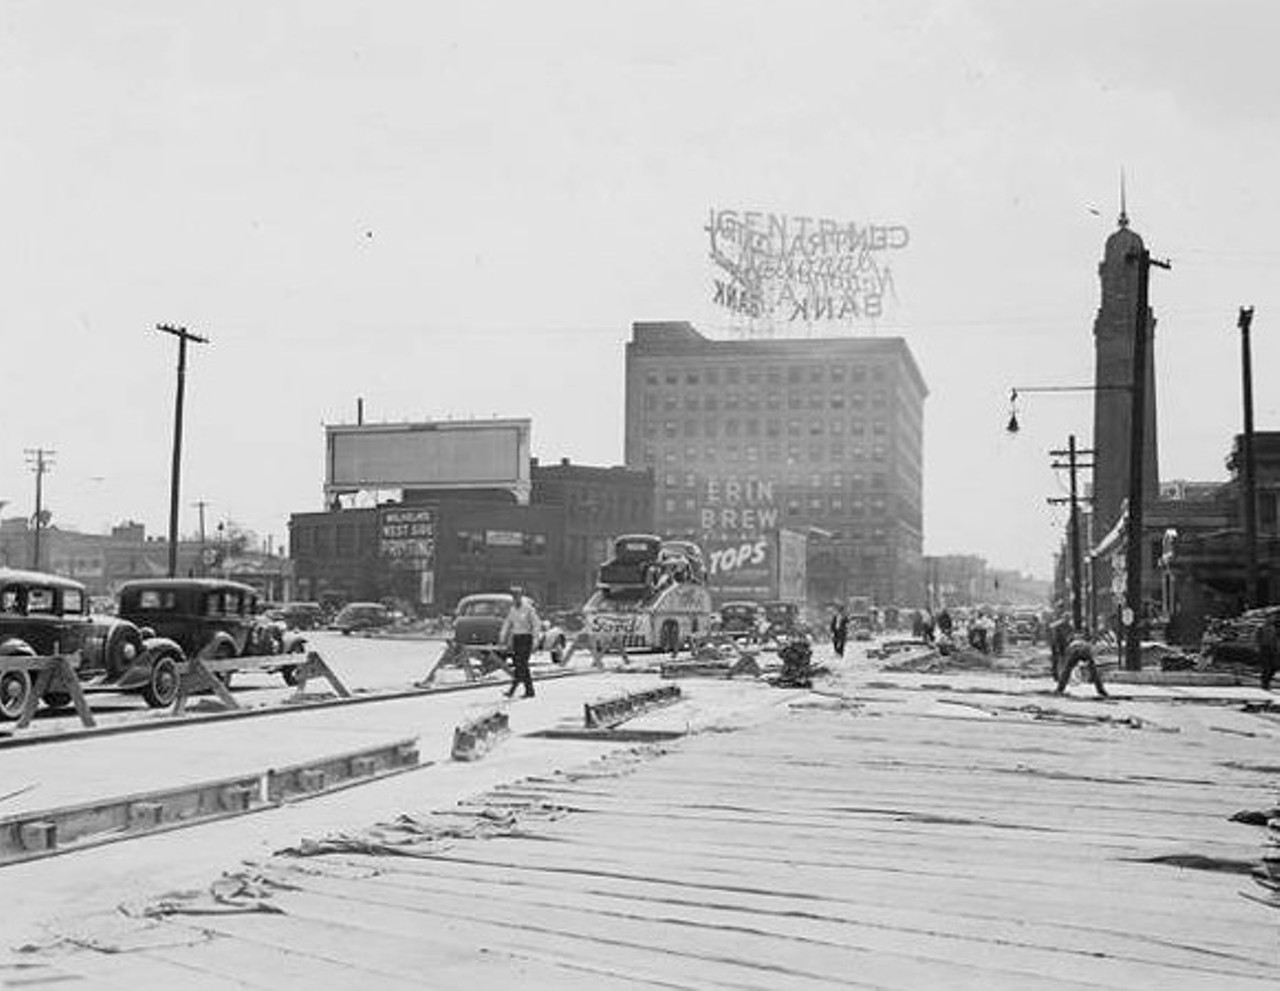 West end of Lorain Carnegie Bridge, 1940.